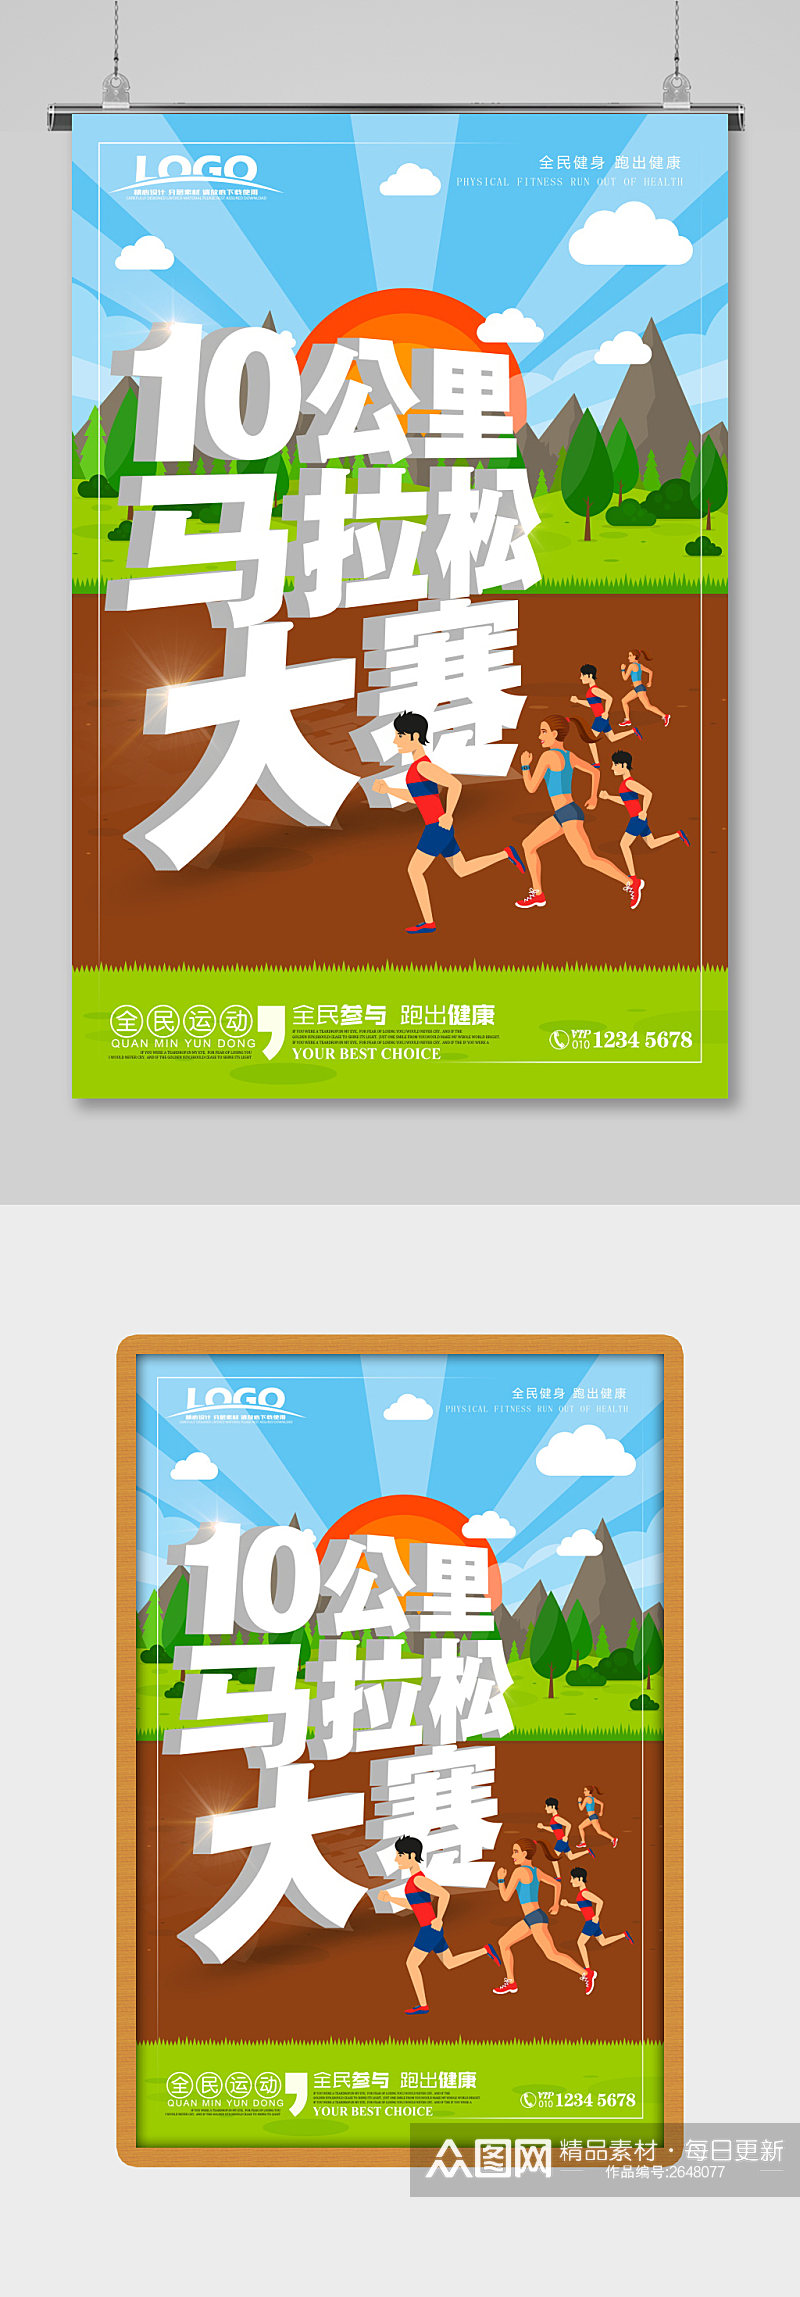 蓝色小清新马拉松比赛运动海报素材